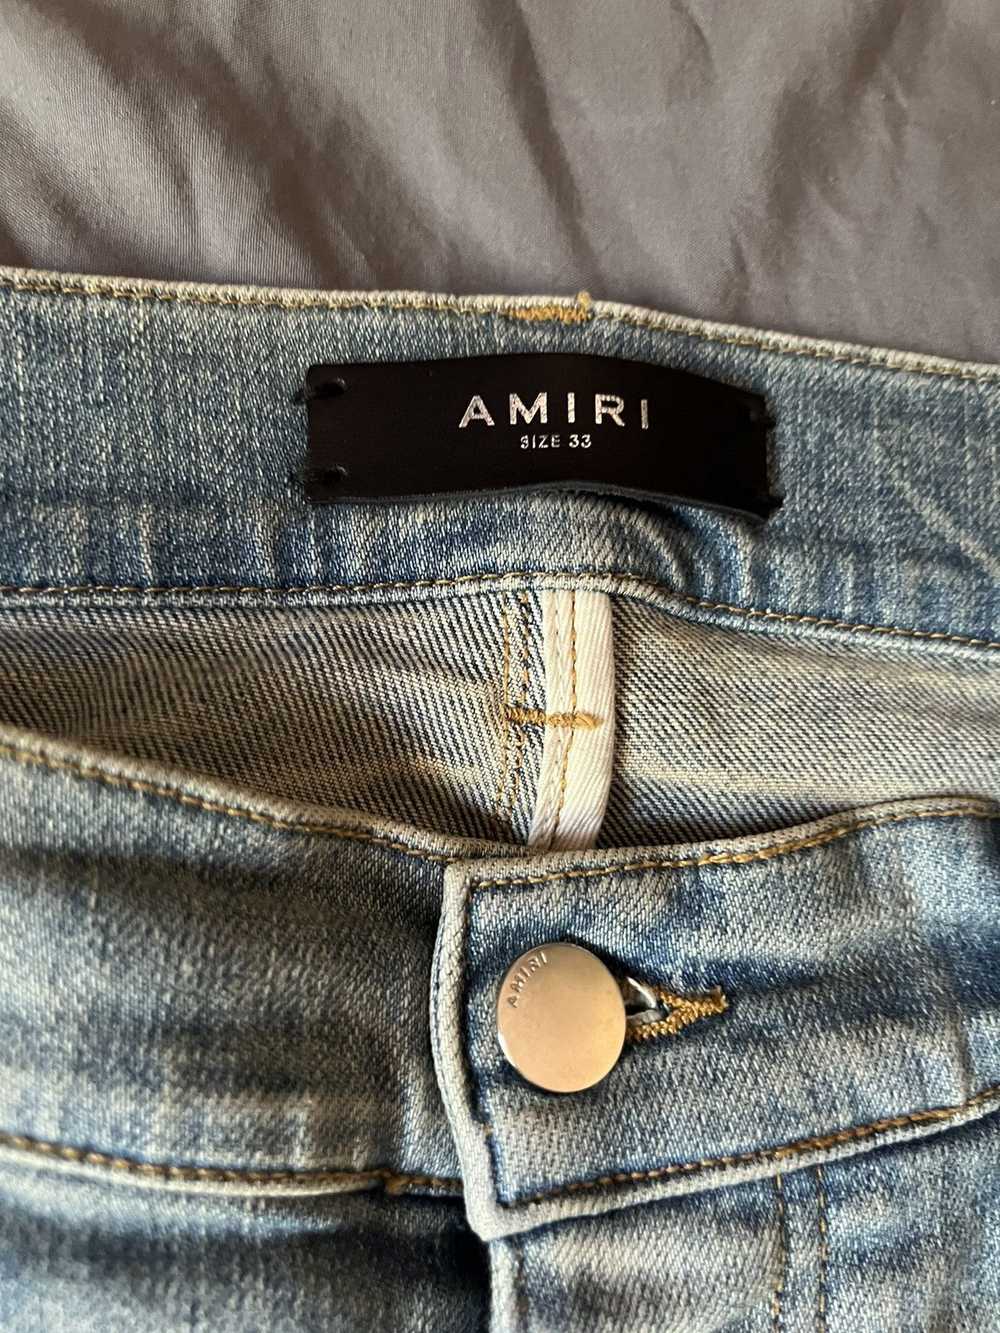 Amiri Amiri jeans - image 3